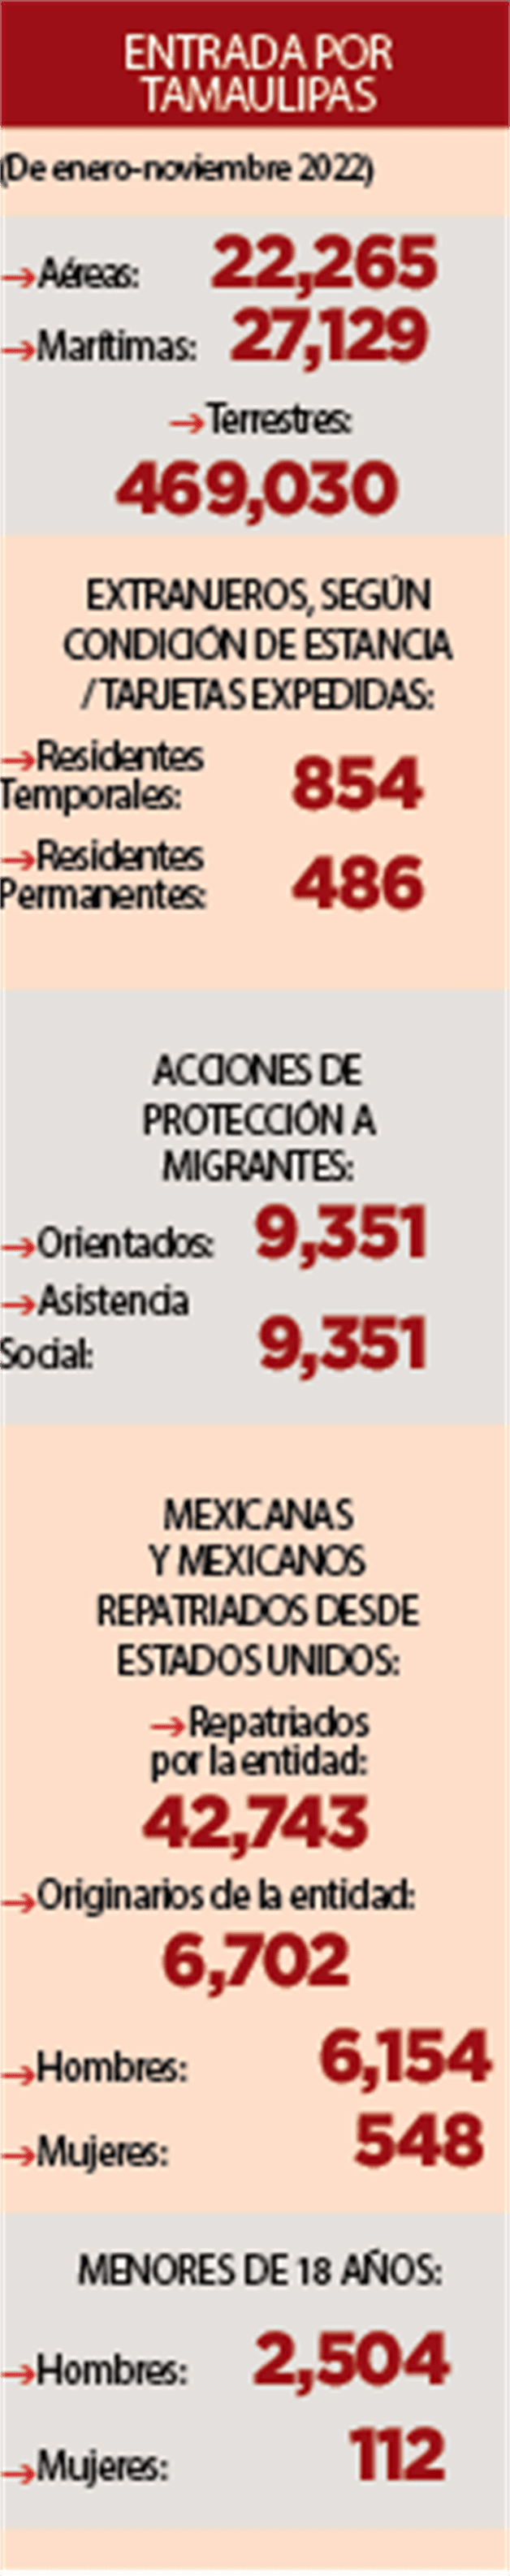 Incrementó deportación 65% de EU a Tamaulipas